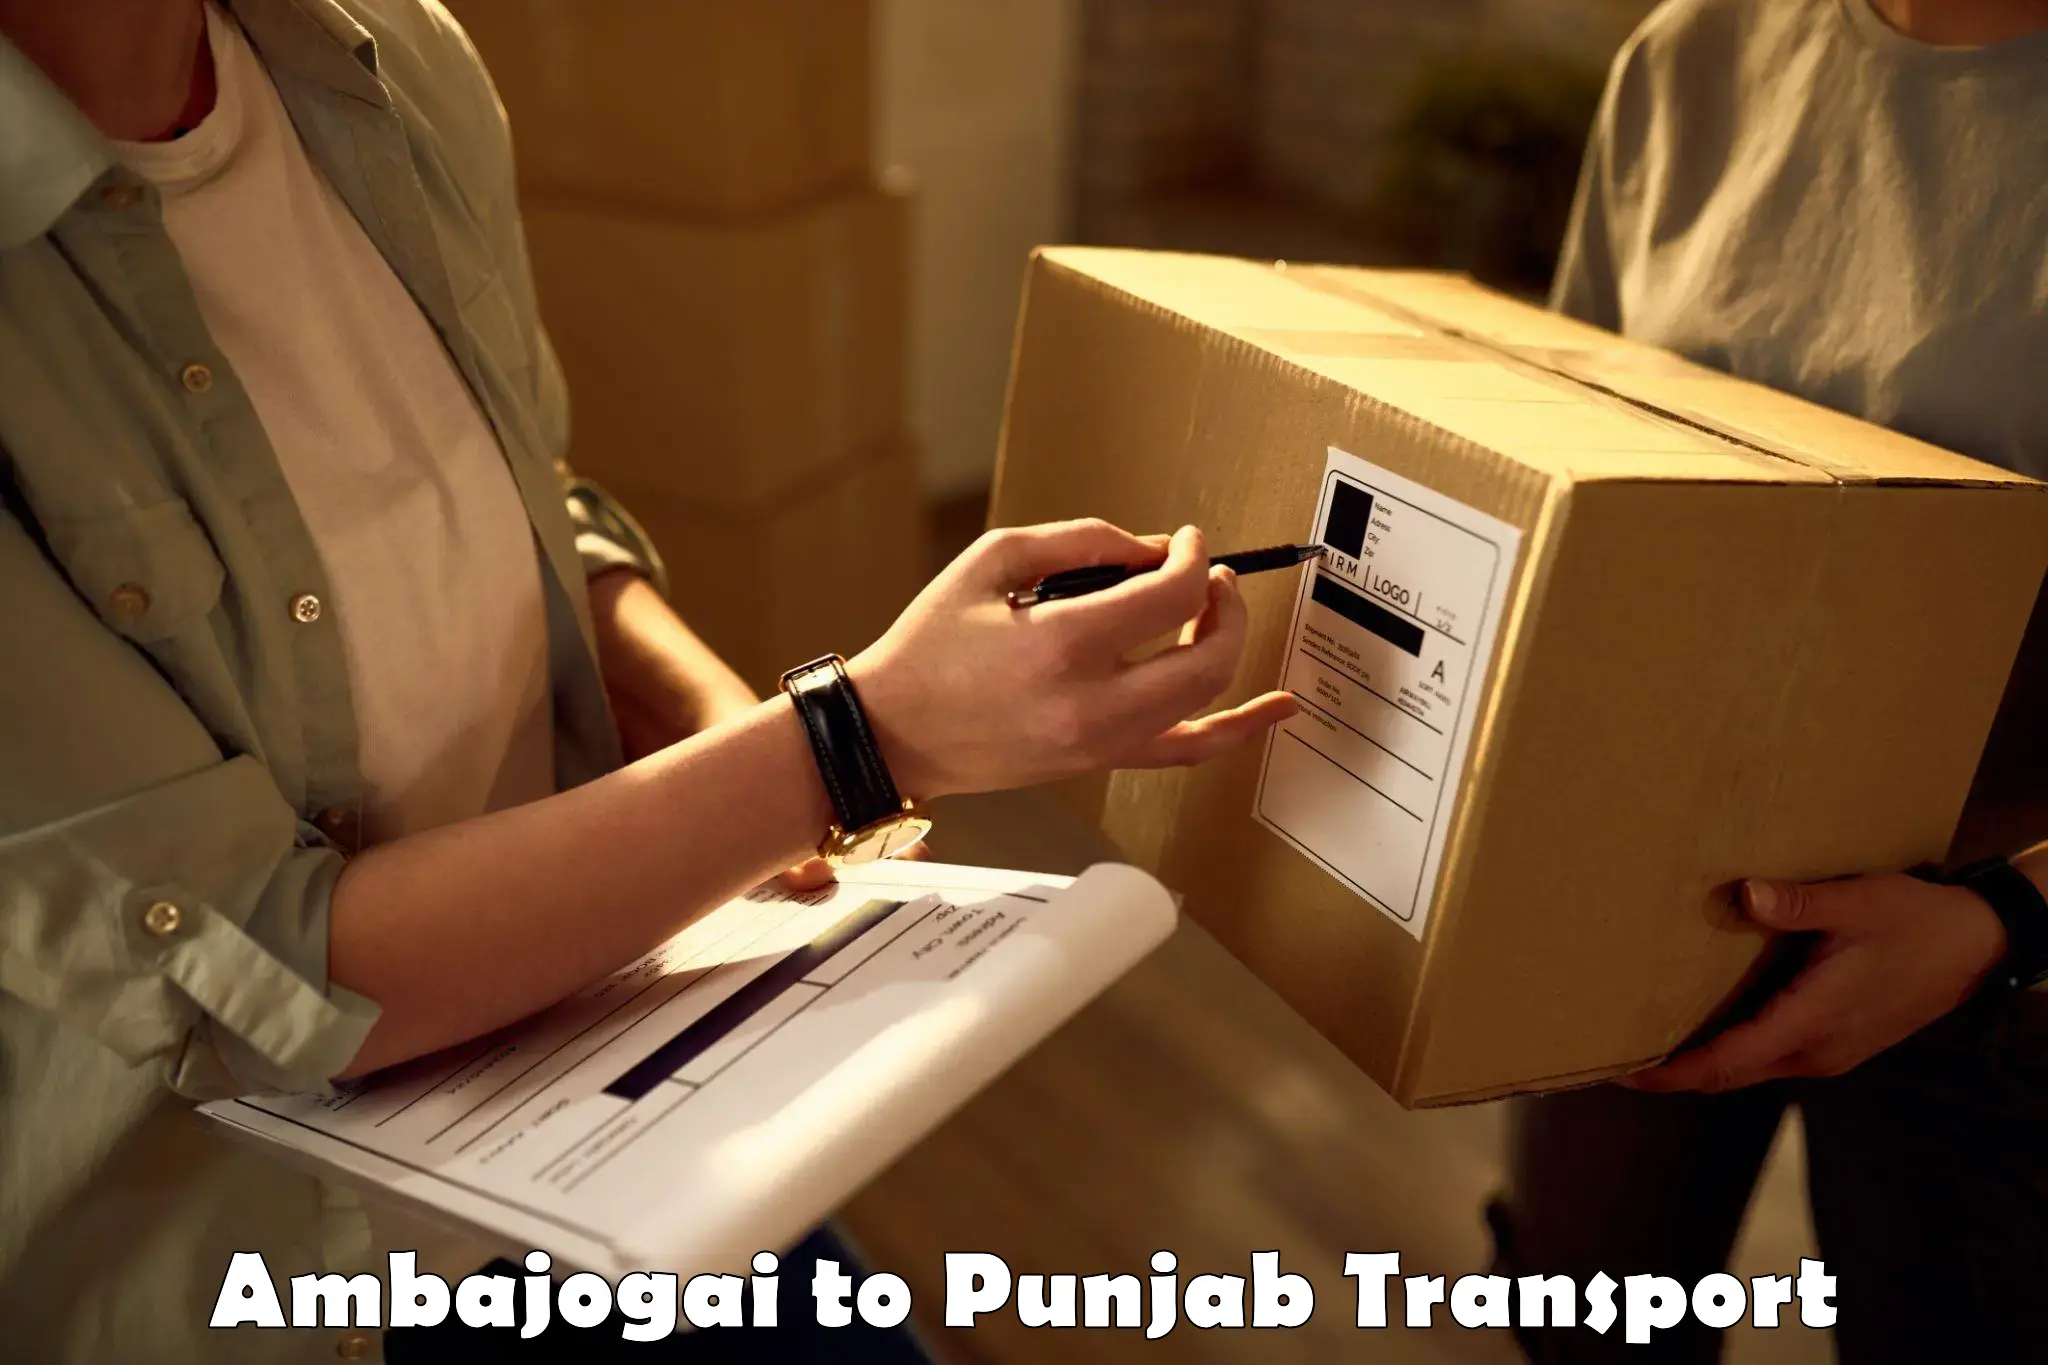 Sending bike to another city Ambajogai to Punjab